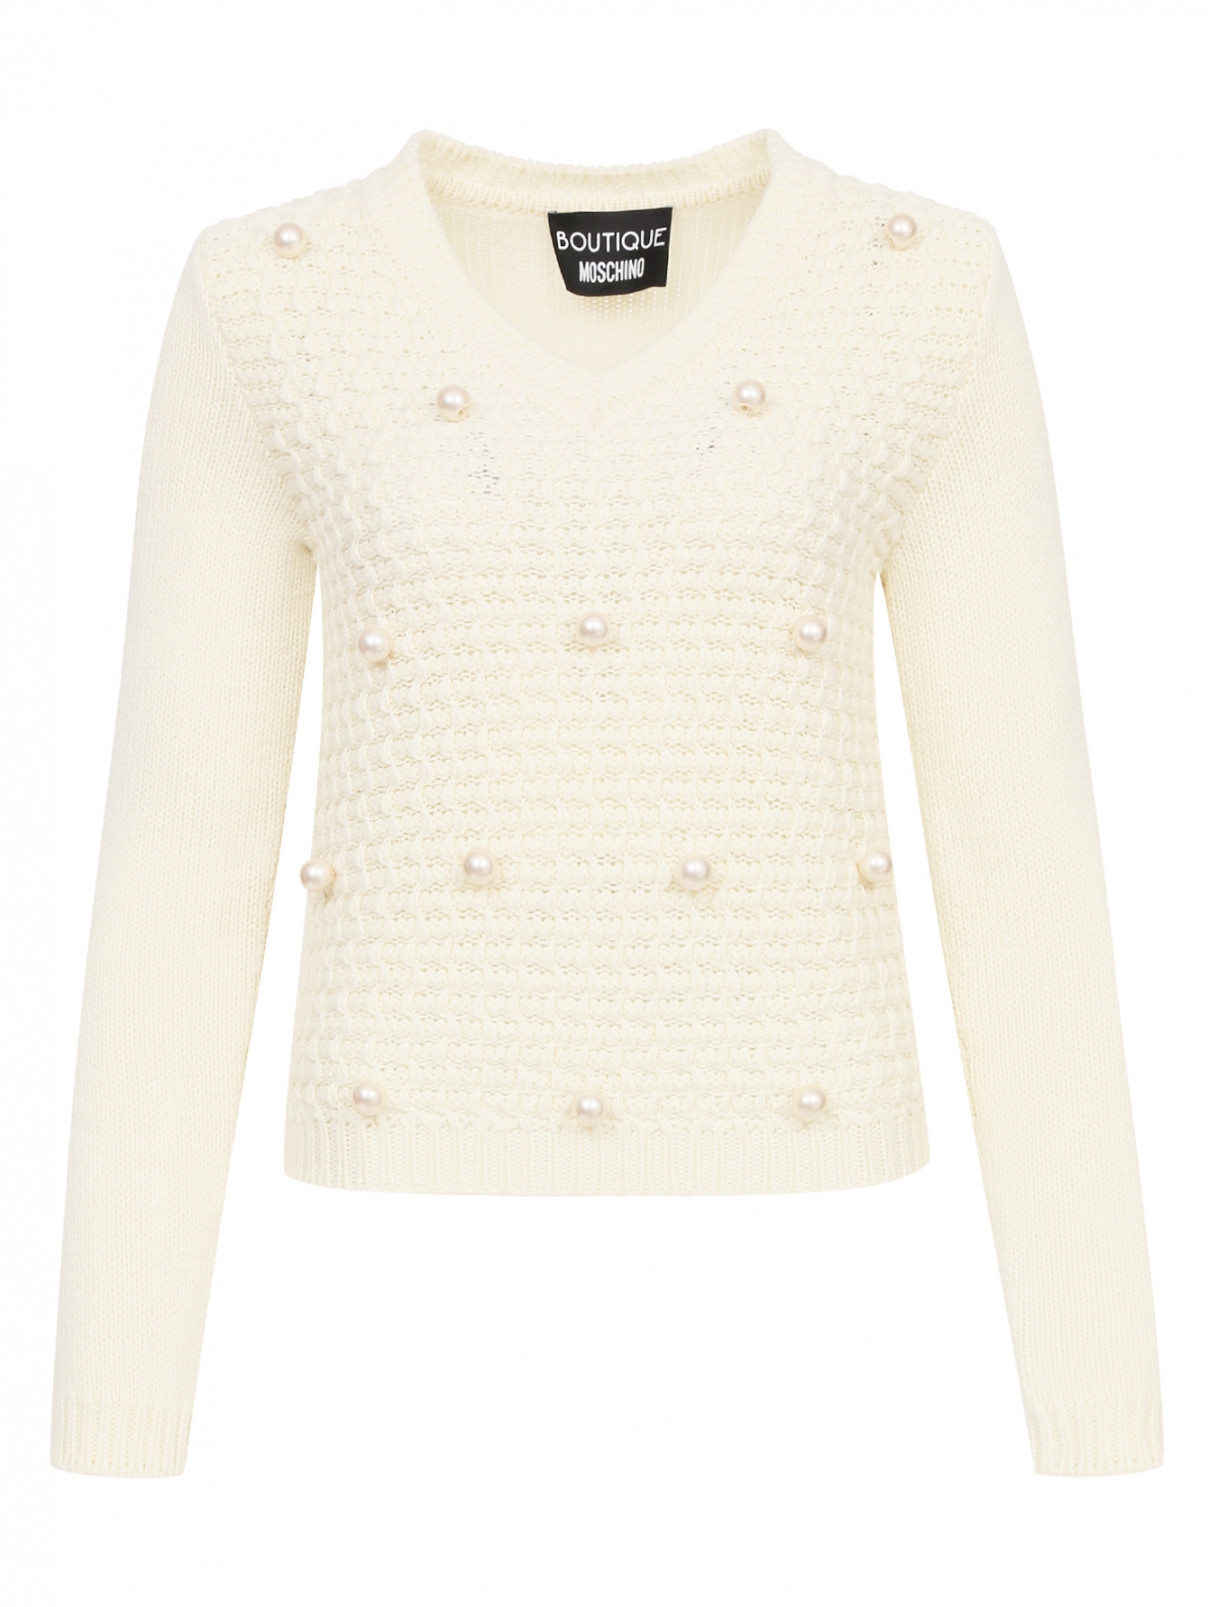 Джемпер из шерсти крупной вязки Moschino Boutique  –  Общий вид  – Цвет:  Белый